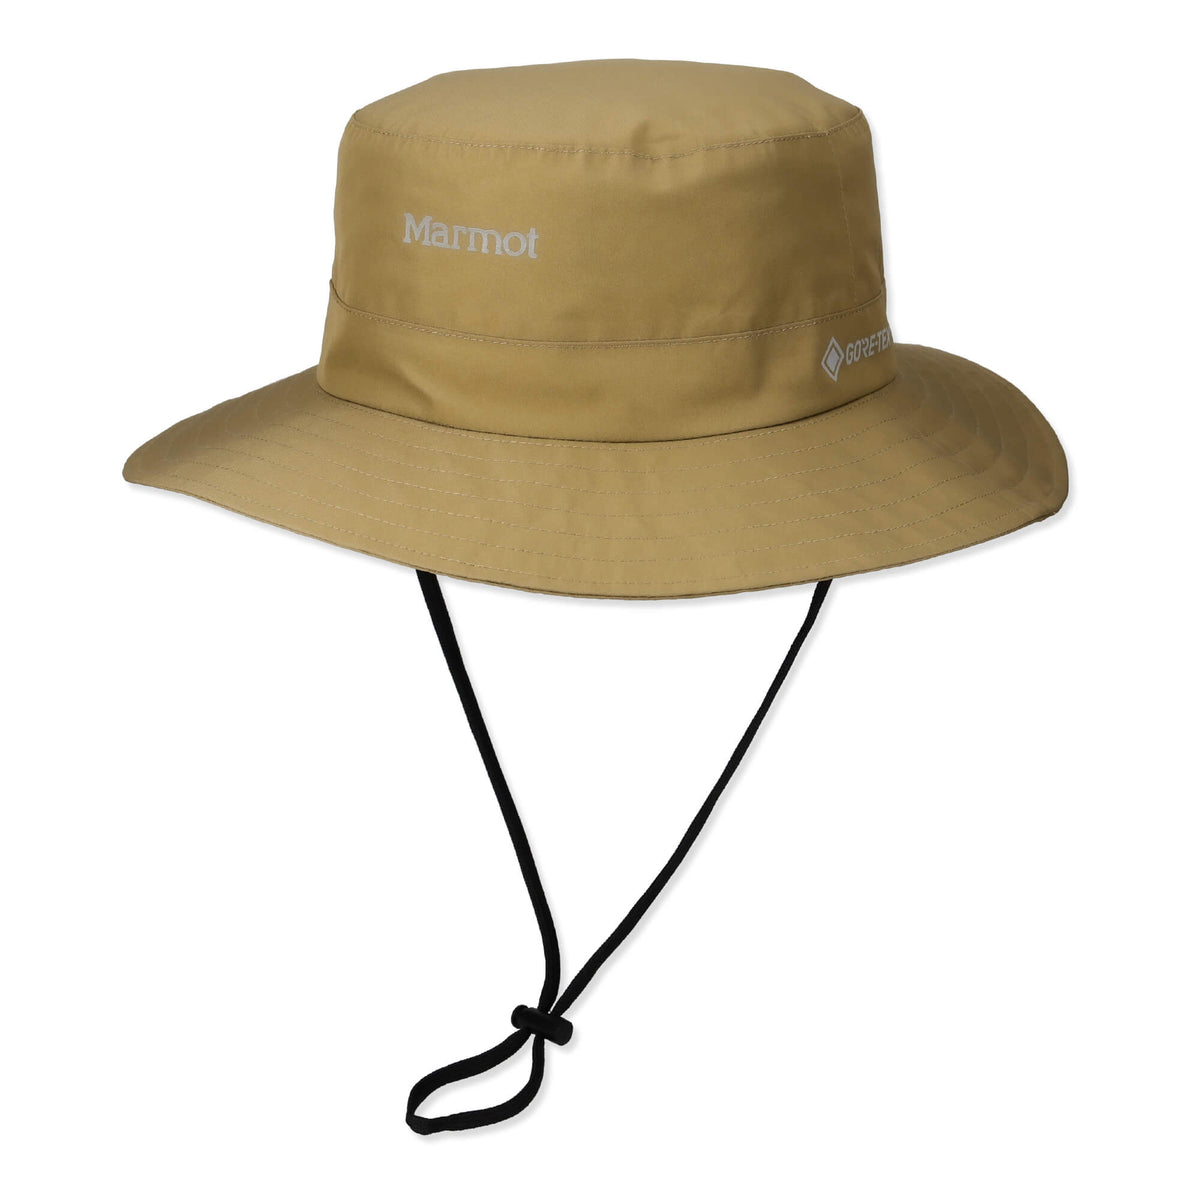 GORE-TEX Seamless Adventure Hat(ゴアテックスシームレスアドベンチャーハット)